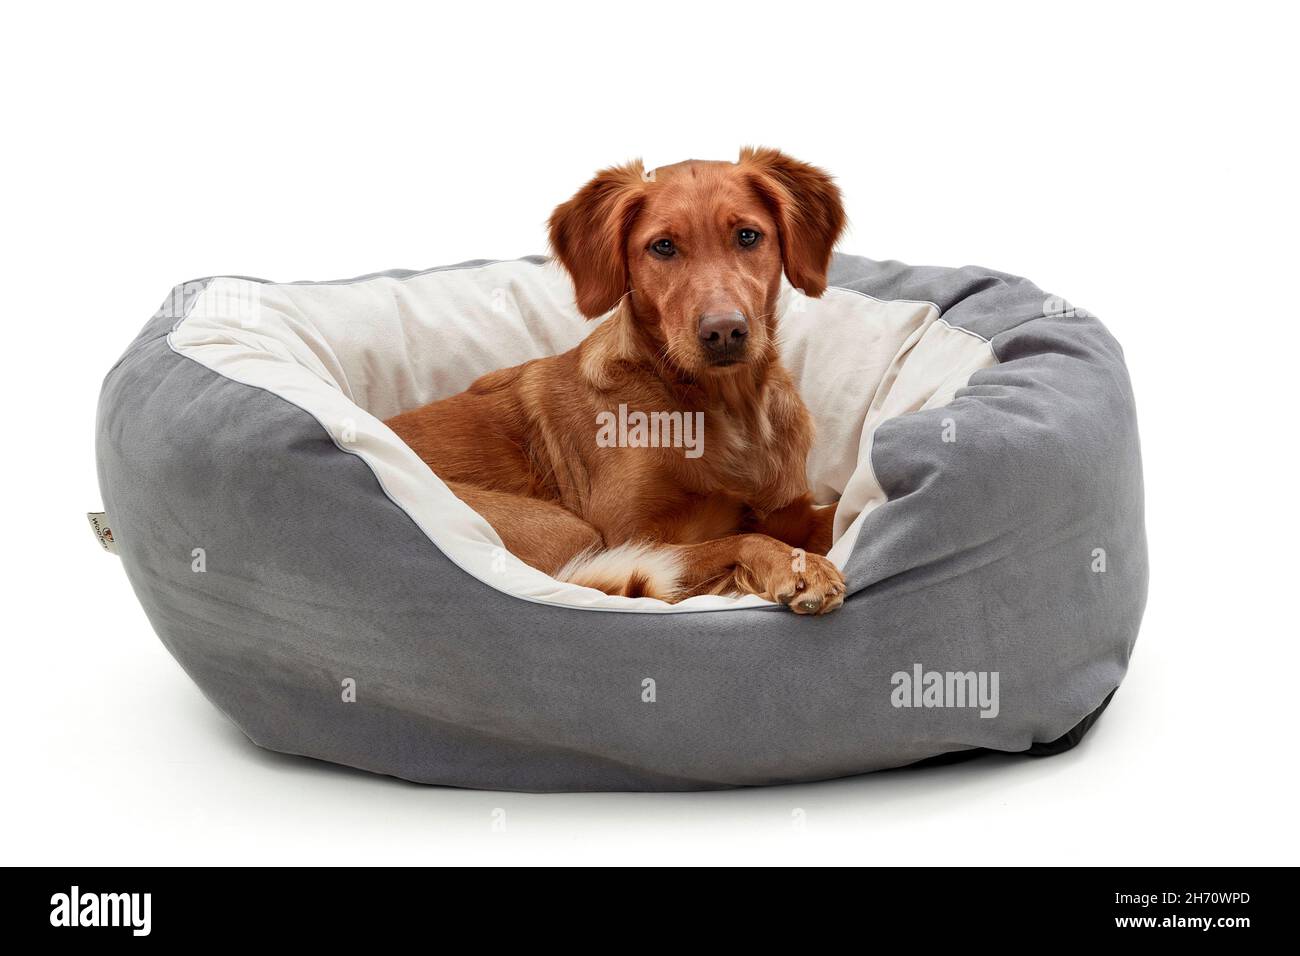 Golden Retriever.Un chien adulte se trouve dans un lit pour chien.Image studio sur fond blanc.Allemagne... Banque D'Images